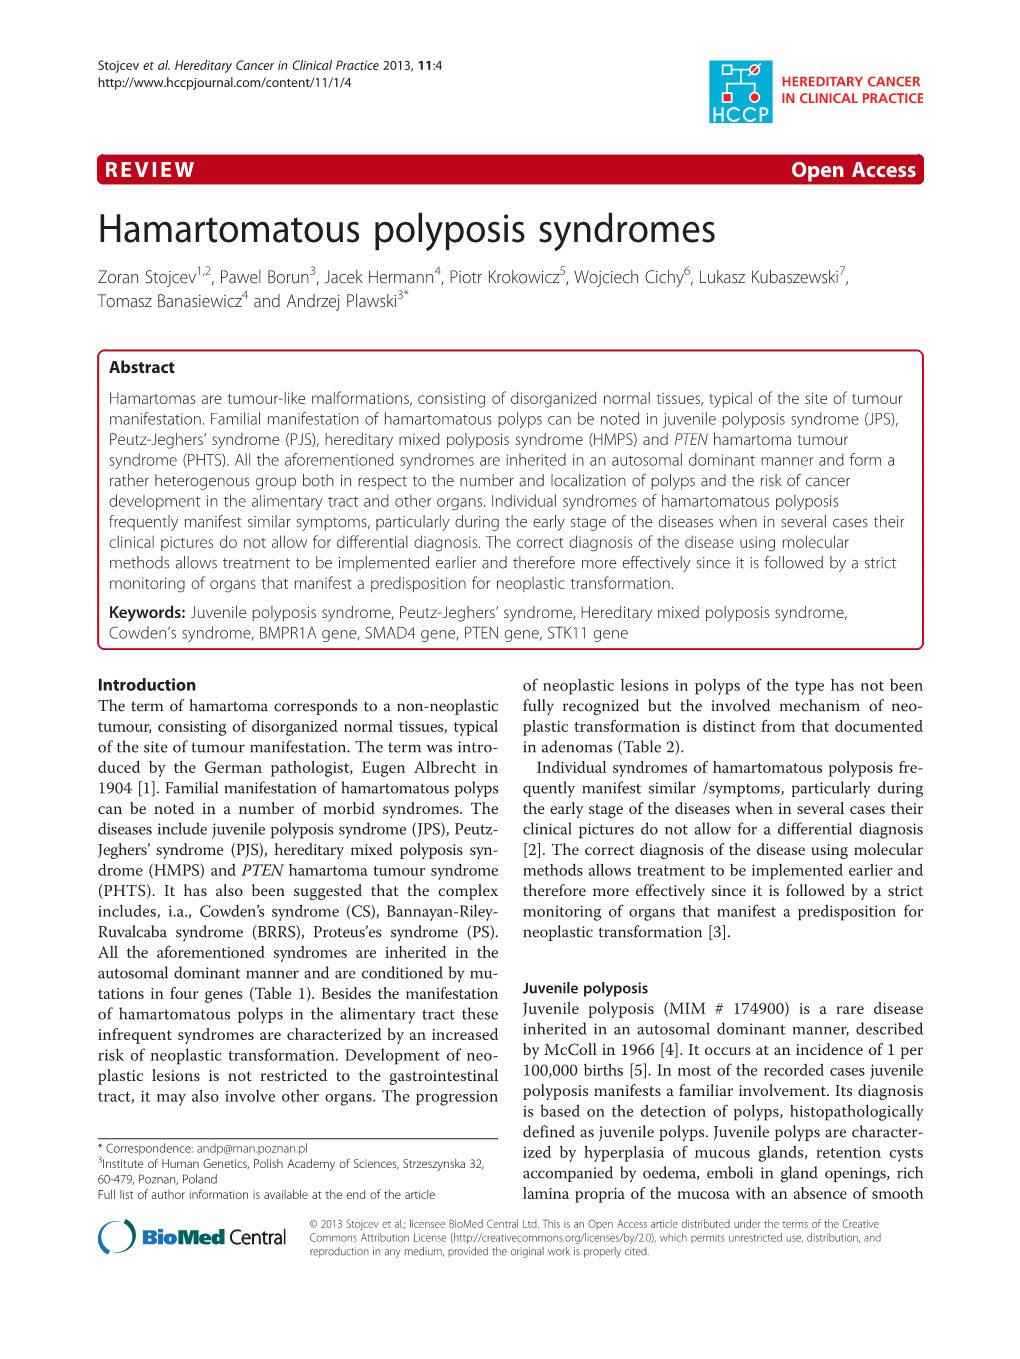 Hamartomatous Polyposis Syndromes